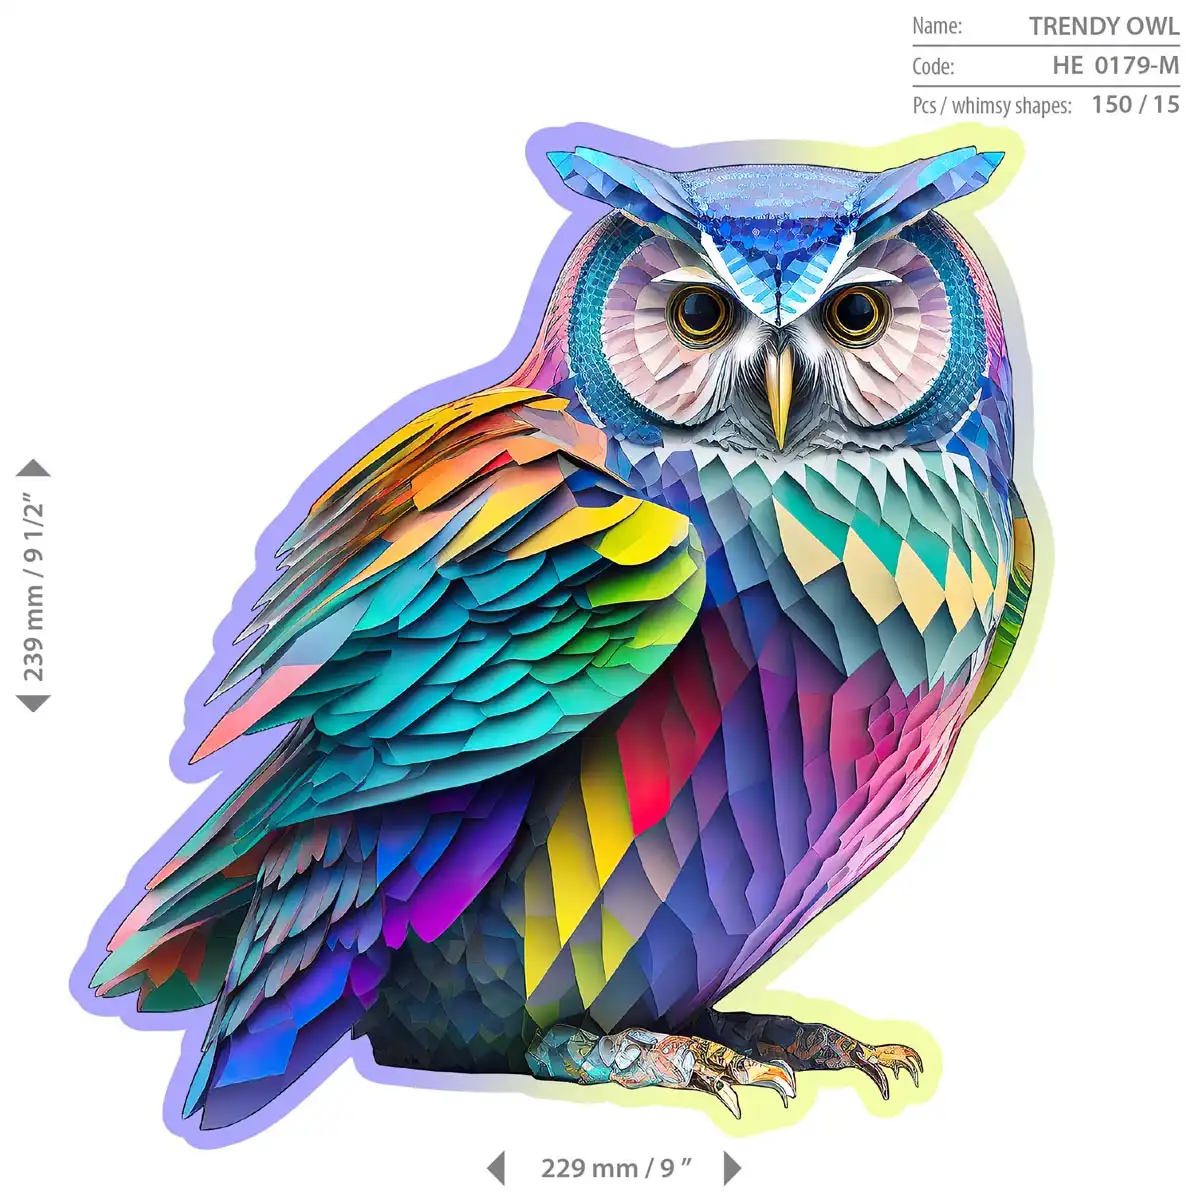 Houten Legpuzzel NEW Trendy Owl 150 pcs